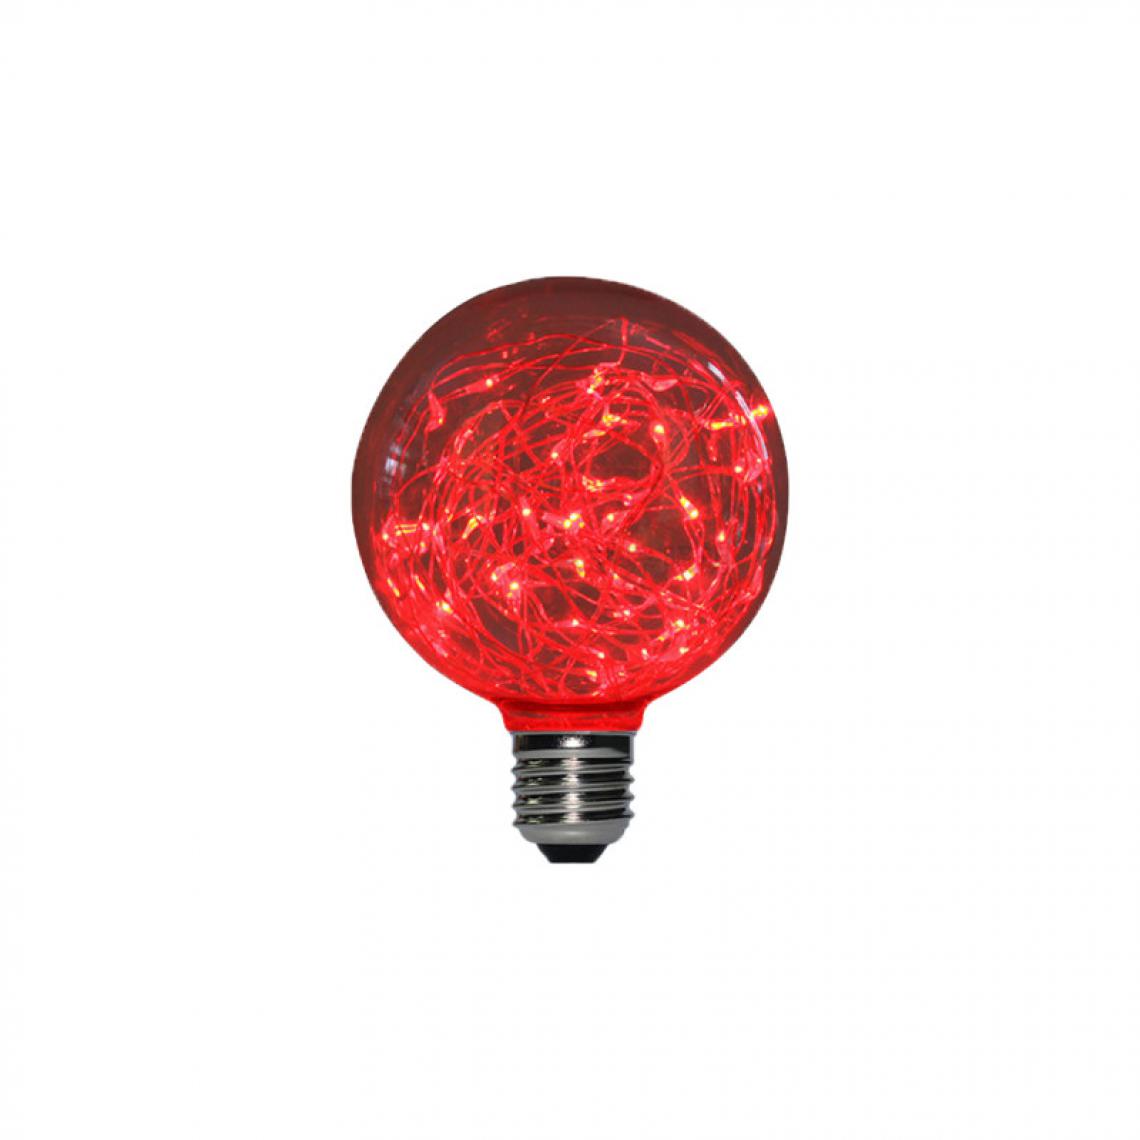 Xxcell - Ampoule LED globe rouge à fil de cuivre XXCELL - 2 W - E27 - Ampoules LED